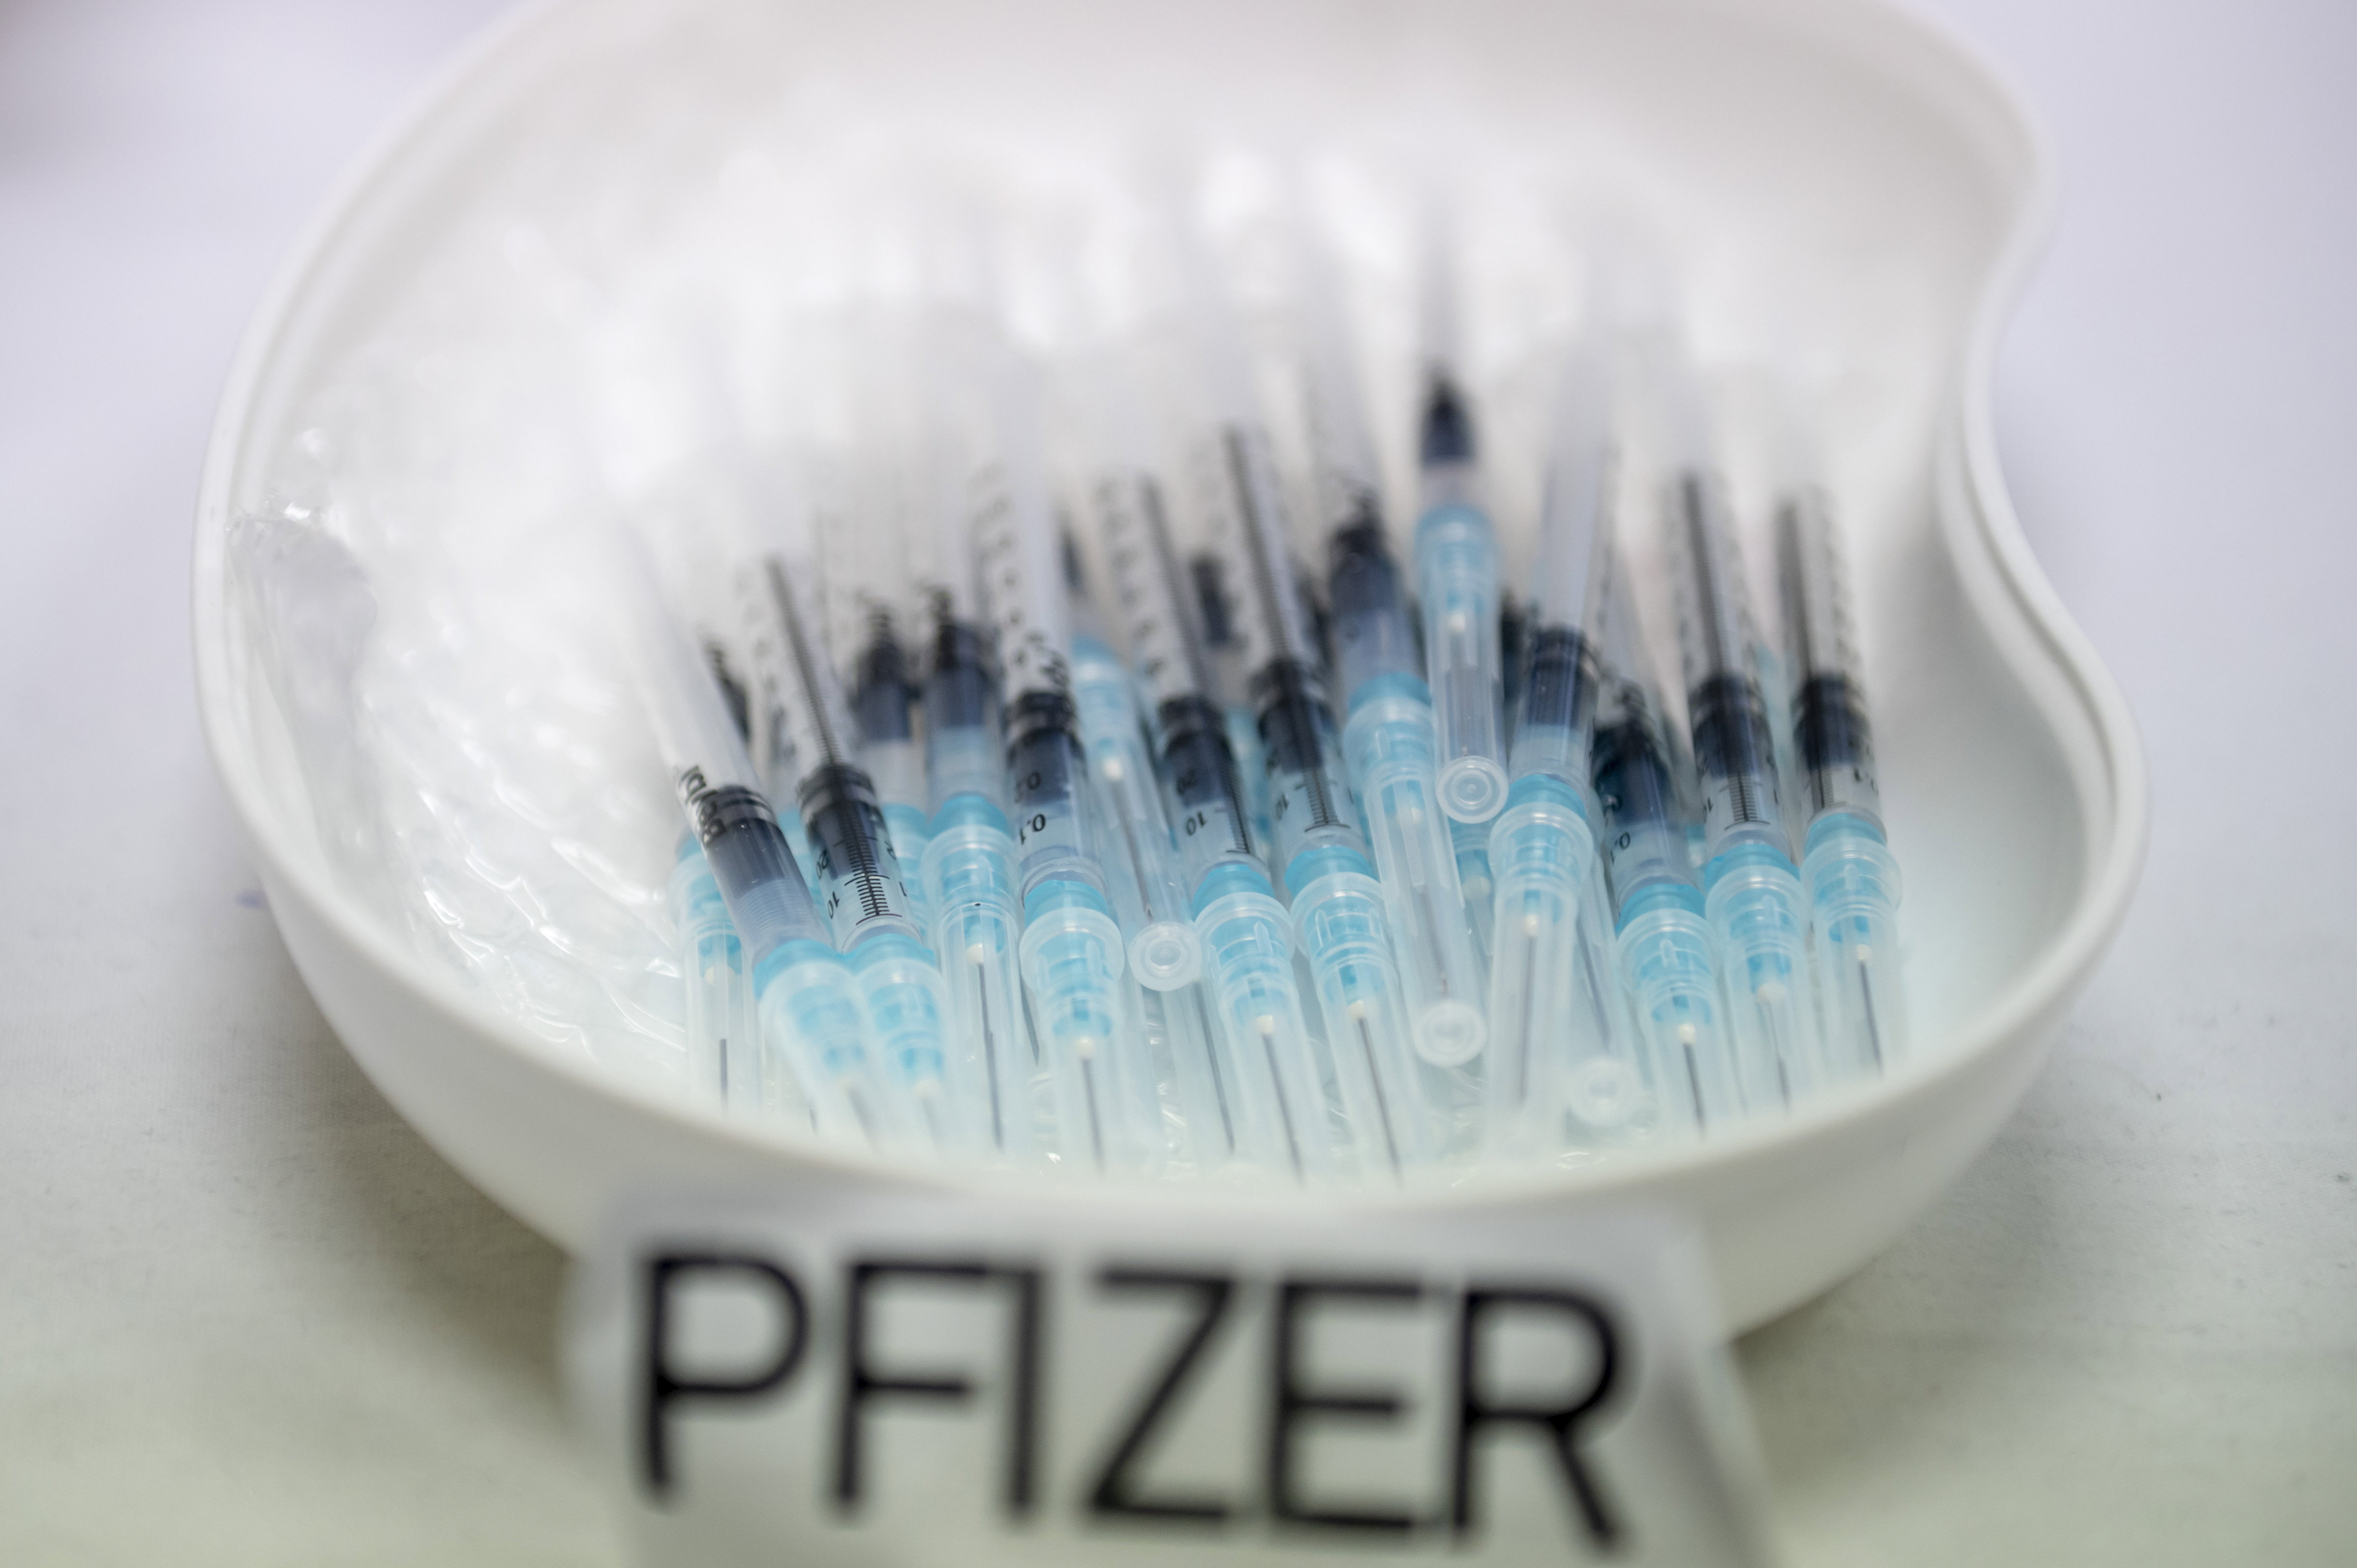 Most már olcsón adja a Pfizer a covid-vakcinát a szegény országoknak